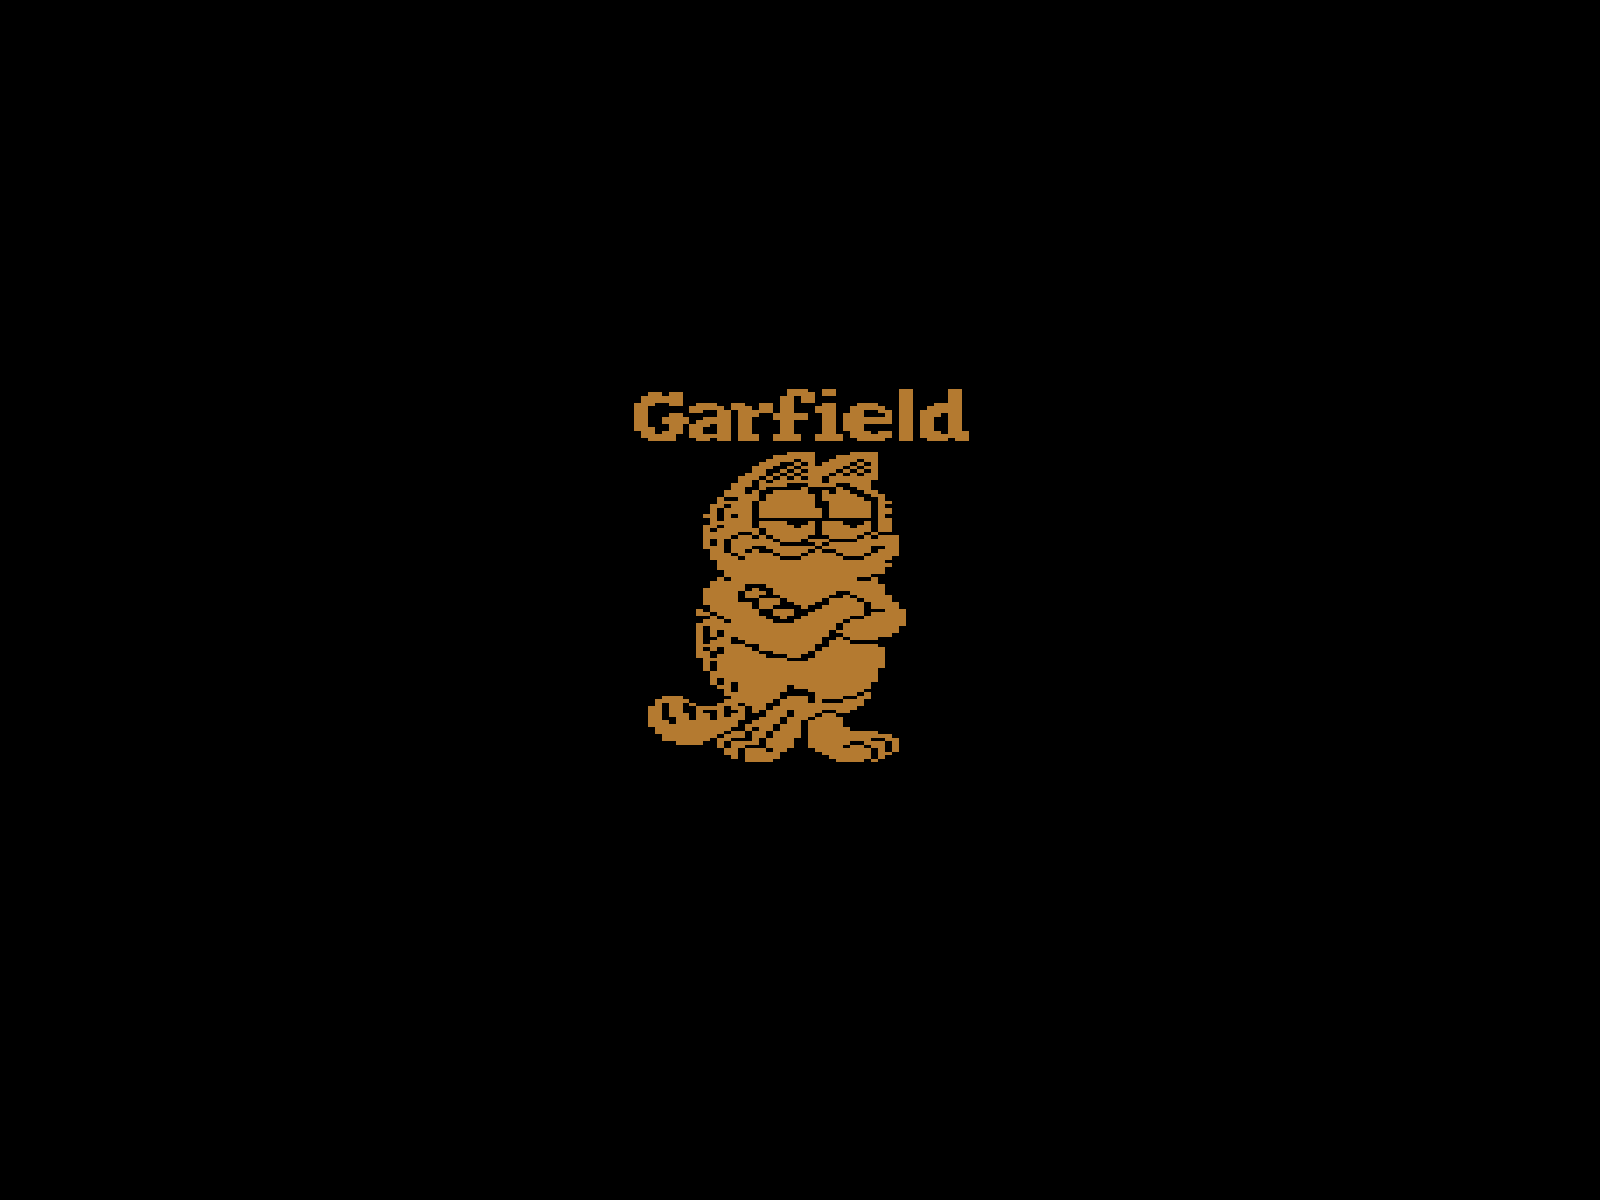 Atari Garfield Wallpaper The Retroist